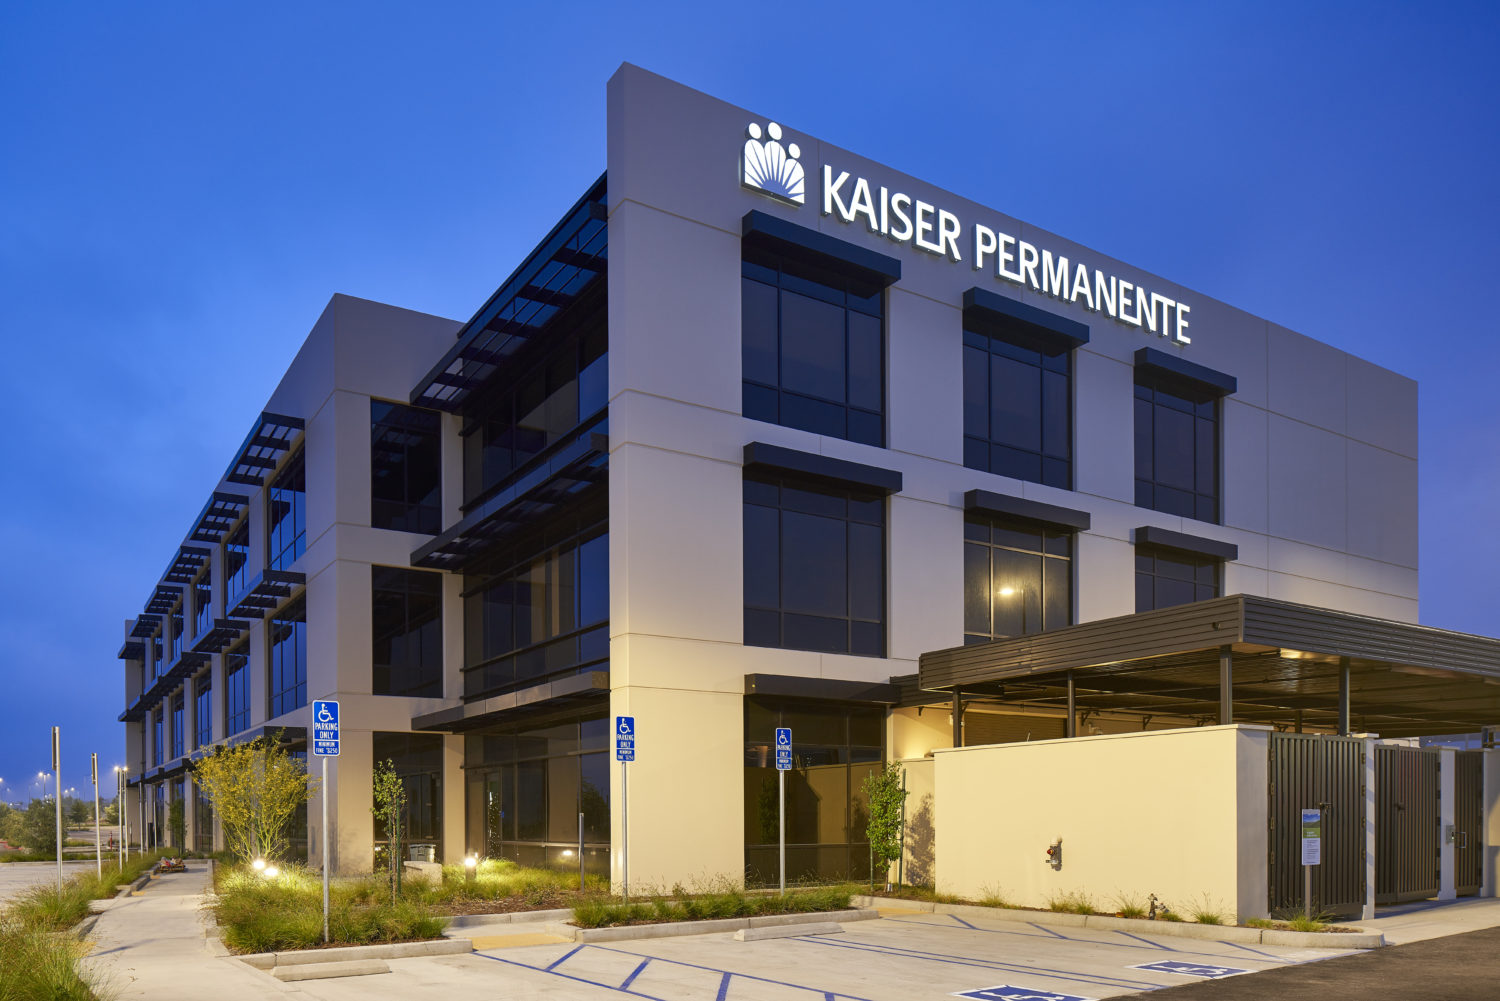 kaiser permanente porter ranch medical offices